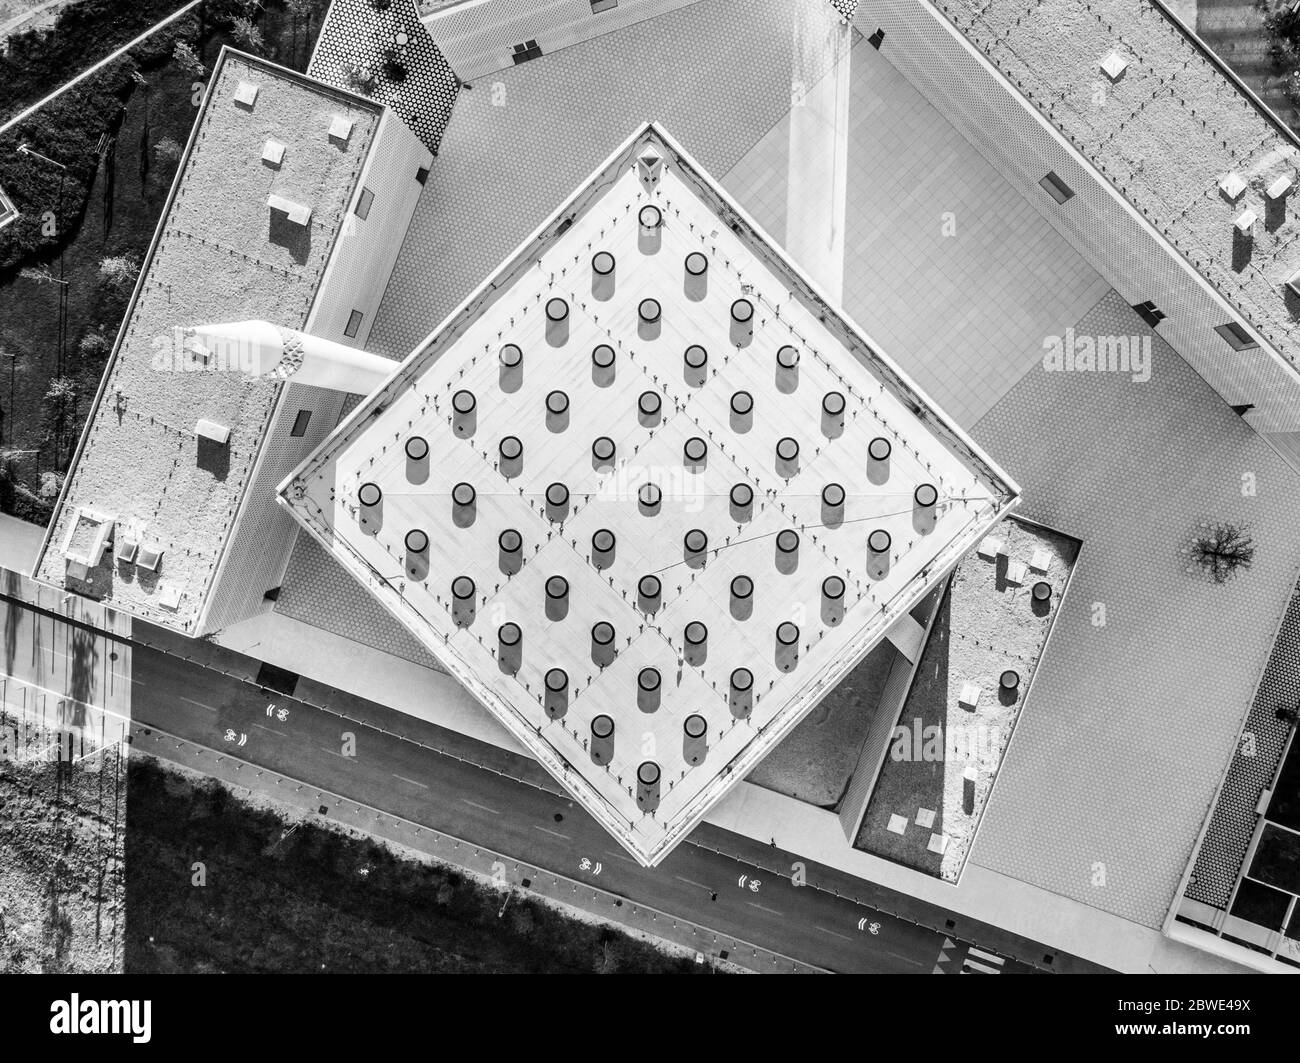 Draufsicht auf moderne Archivarchitektur des islamischen religiösen Kulturzentrums in Ljubljana, Slowenien, Europa. Schwarzweiß-Bild Stockfoto